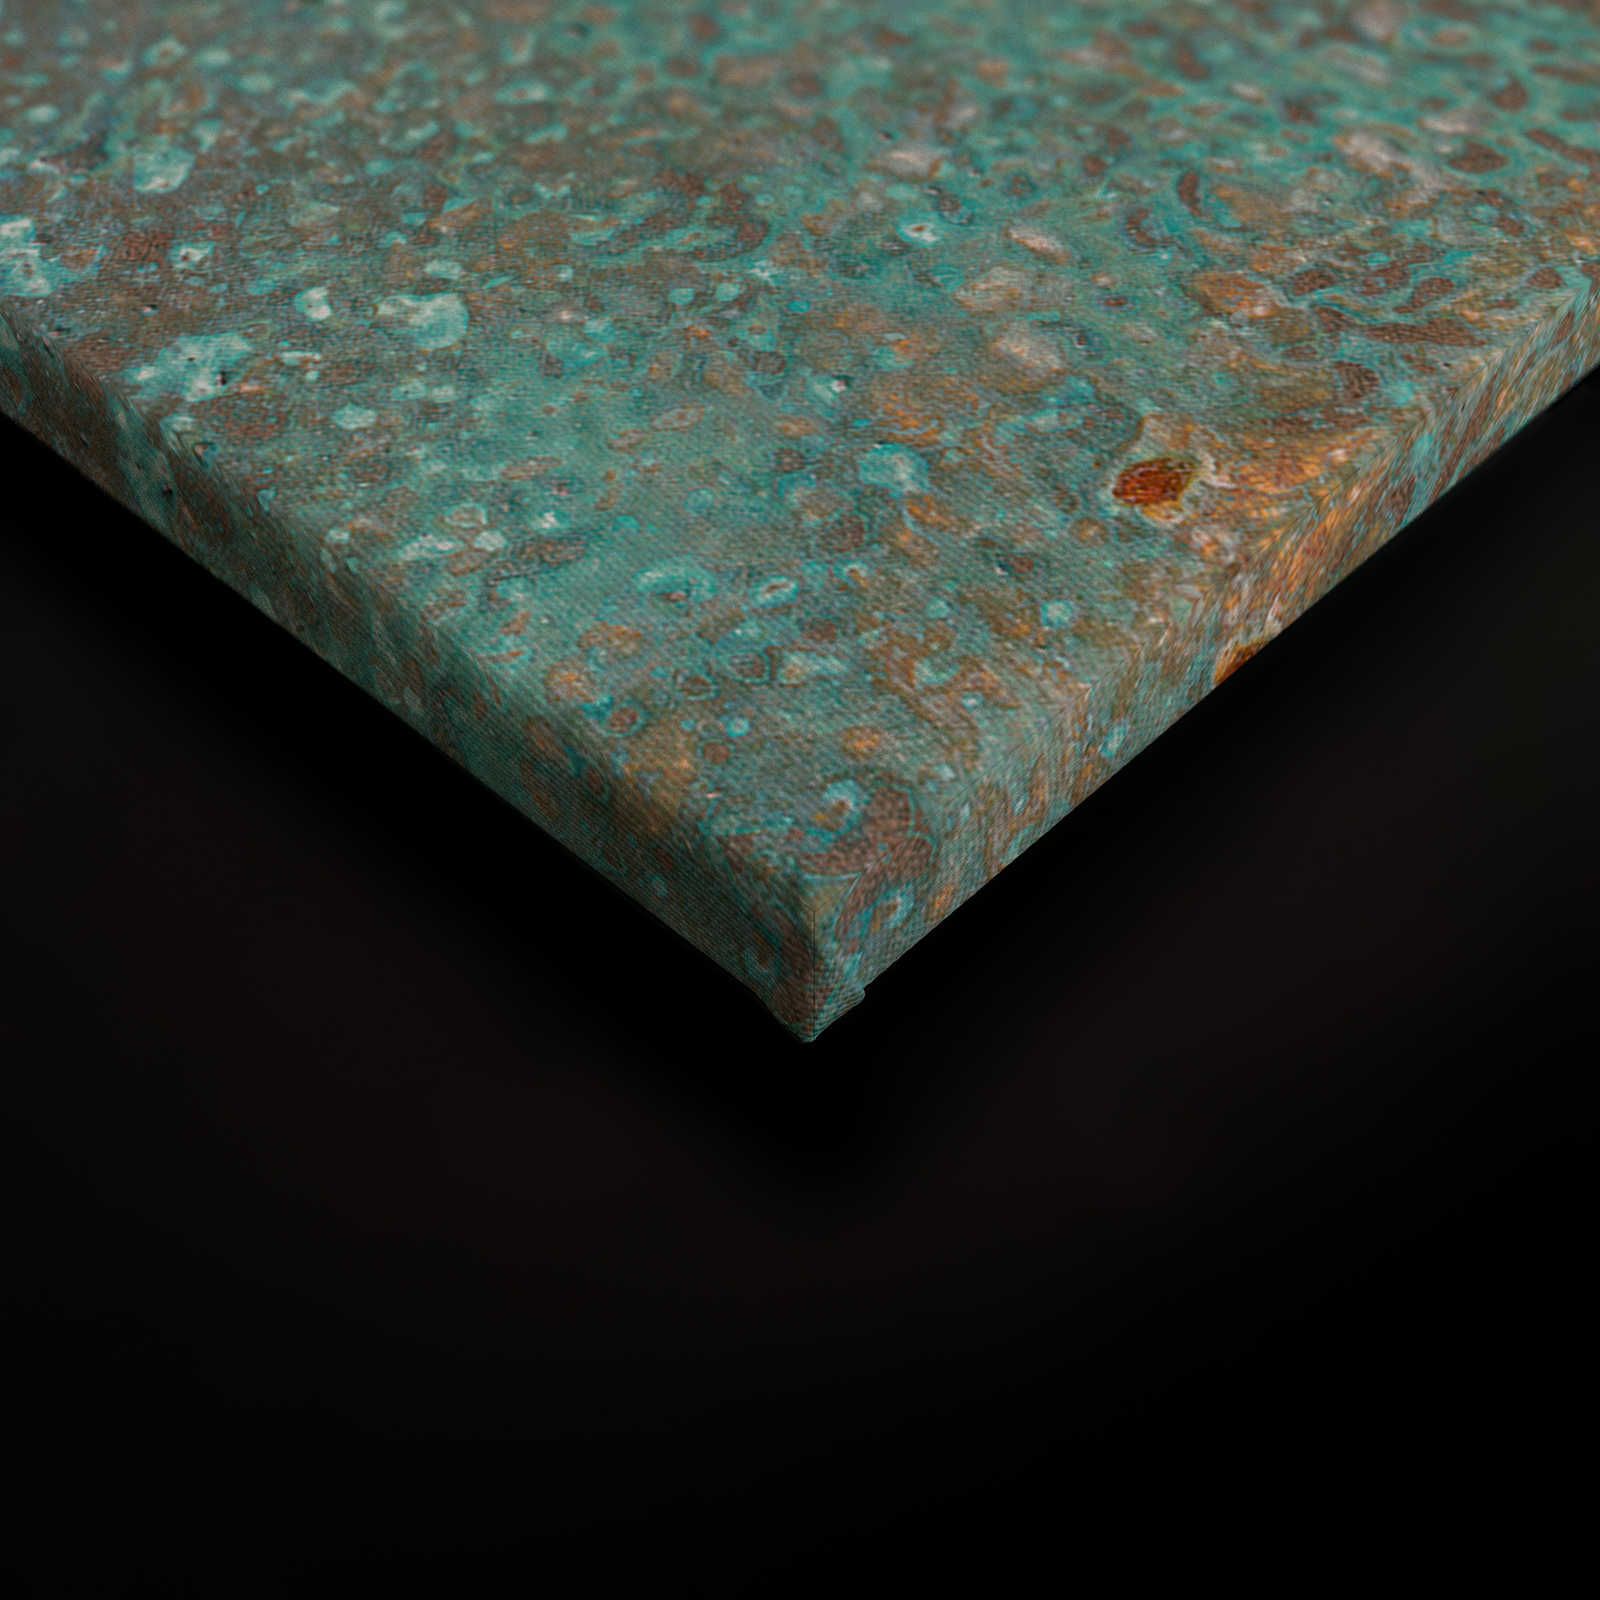             Toile aspect métal patine turquoise avec rouille - 0,90 m x 0,60 m
        